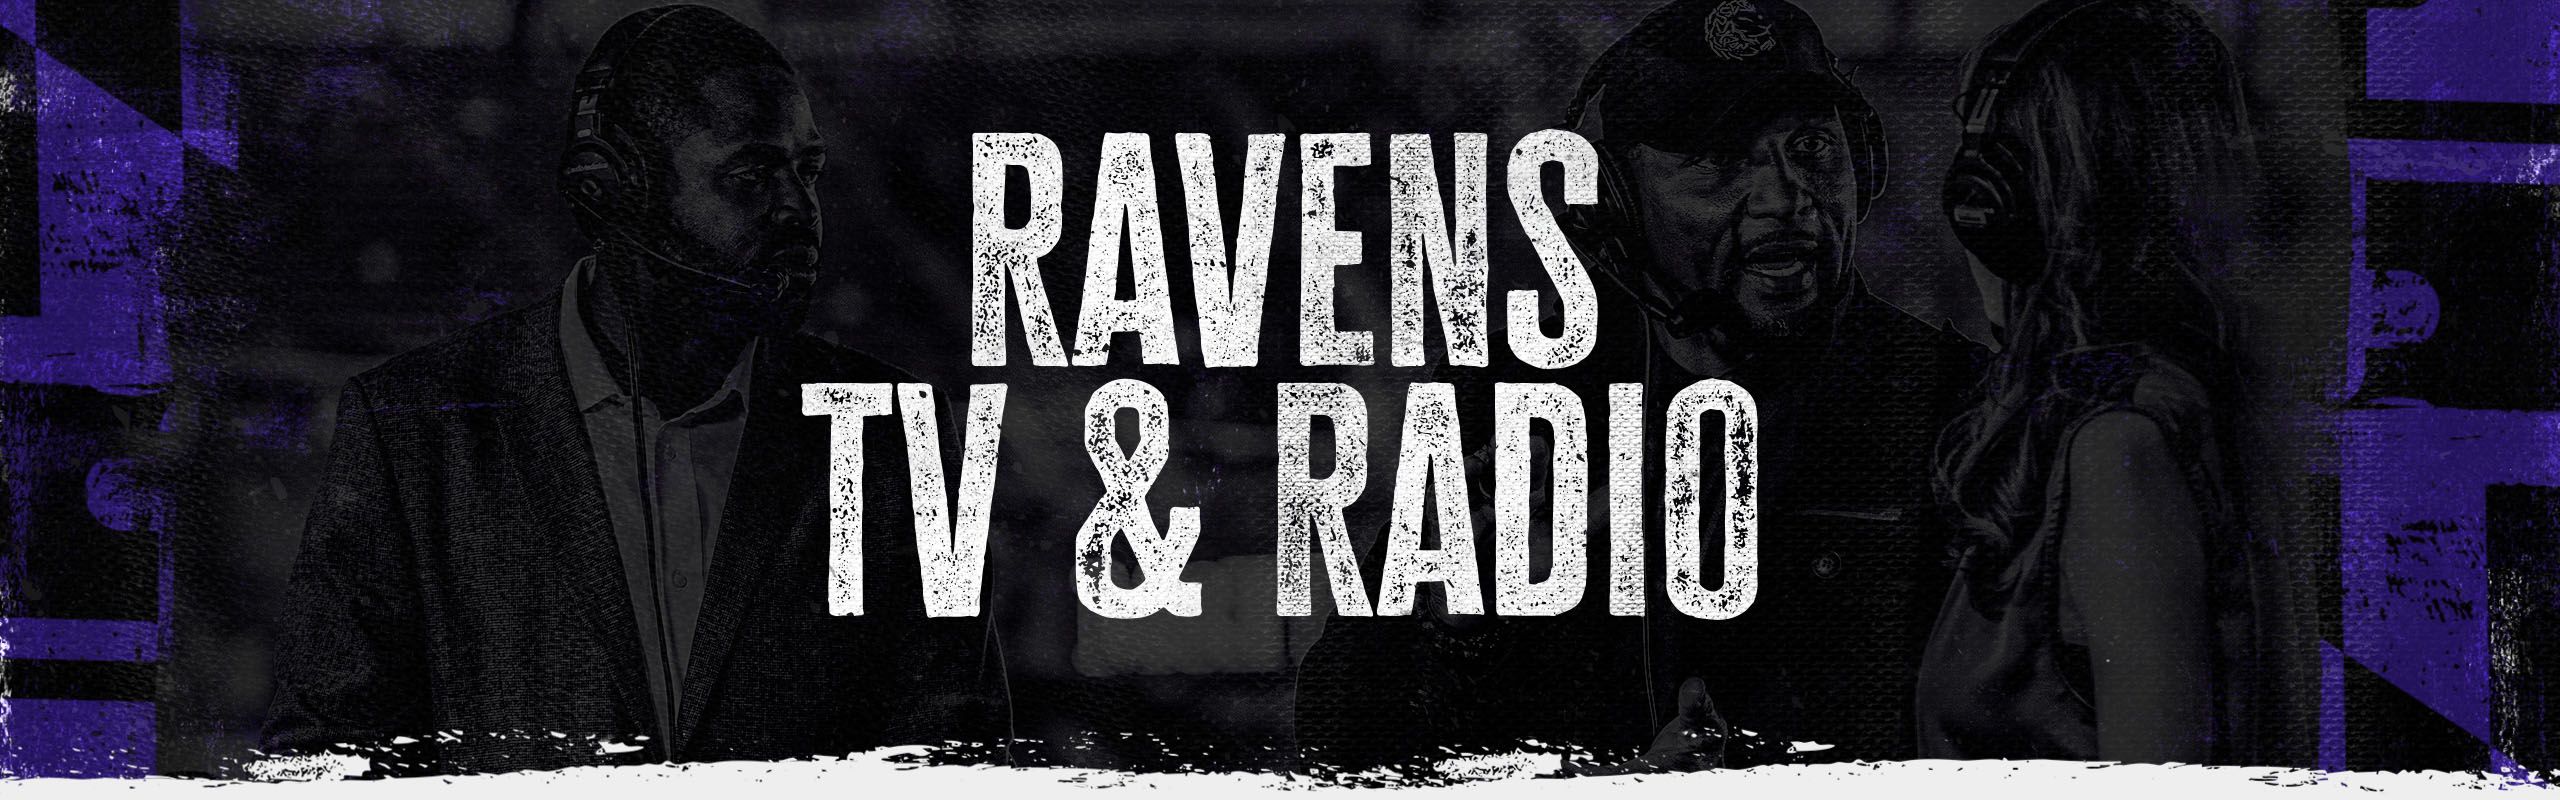 ravens television schedule